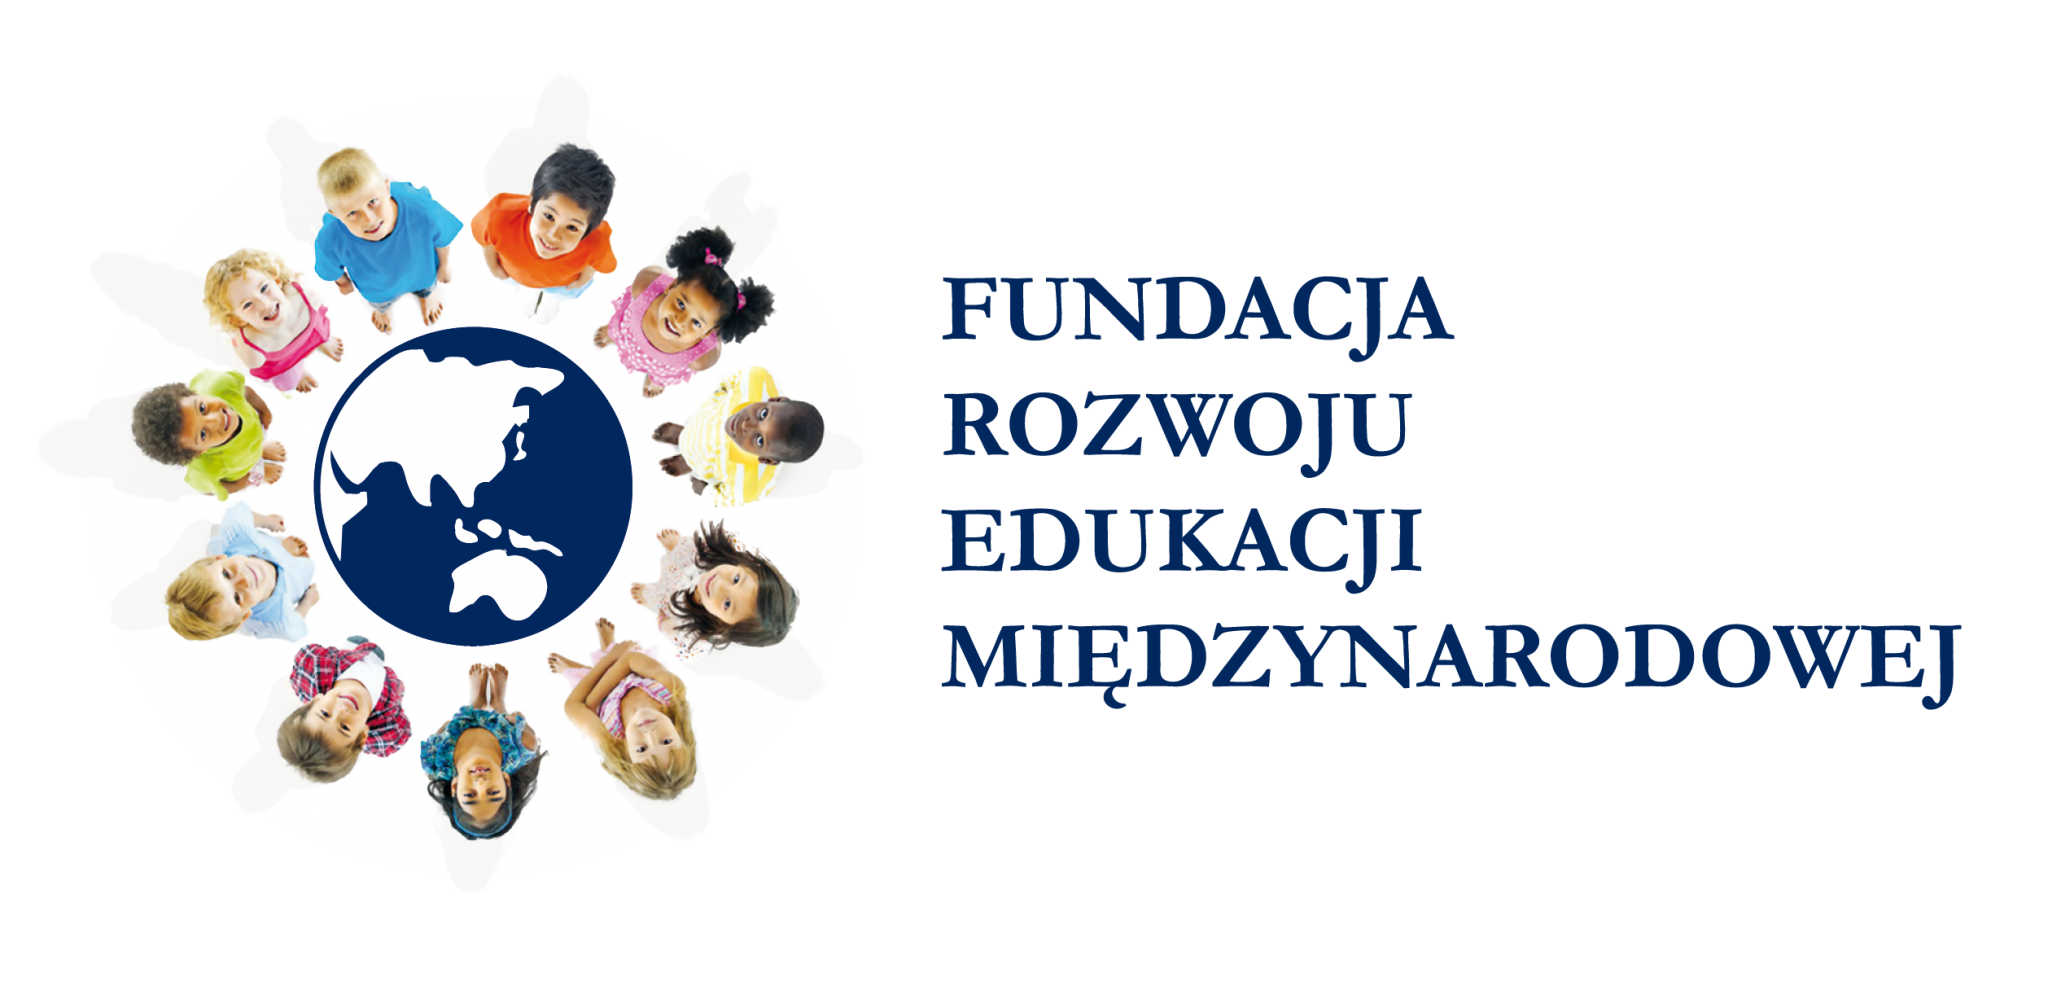 Fundacja Rozwoju Edukacji Międzynarodowej